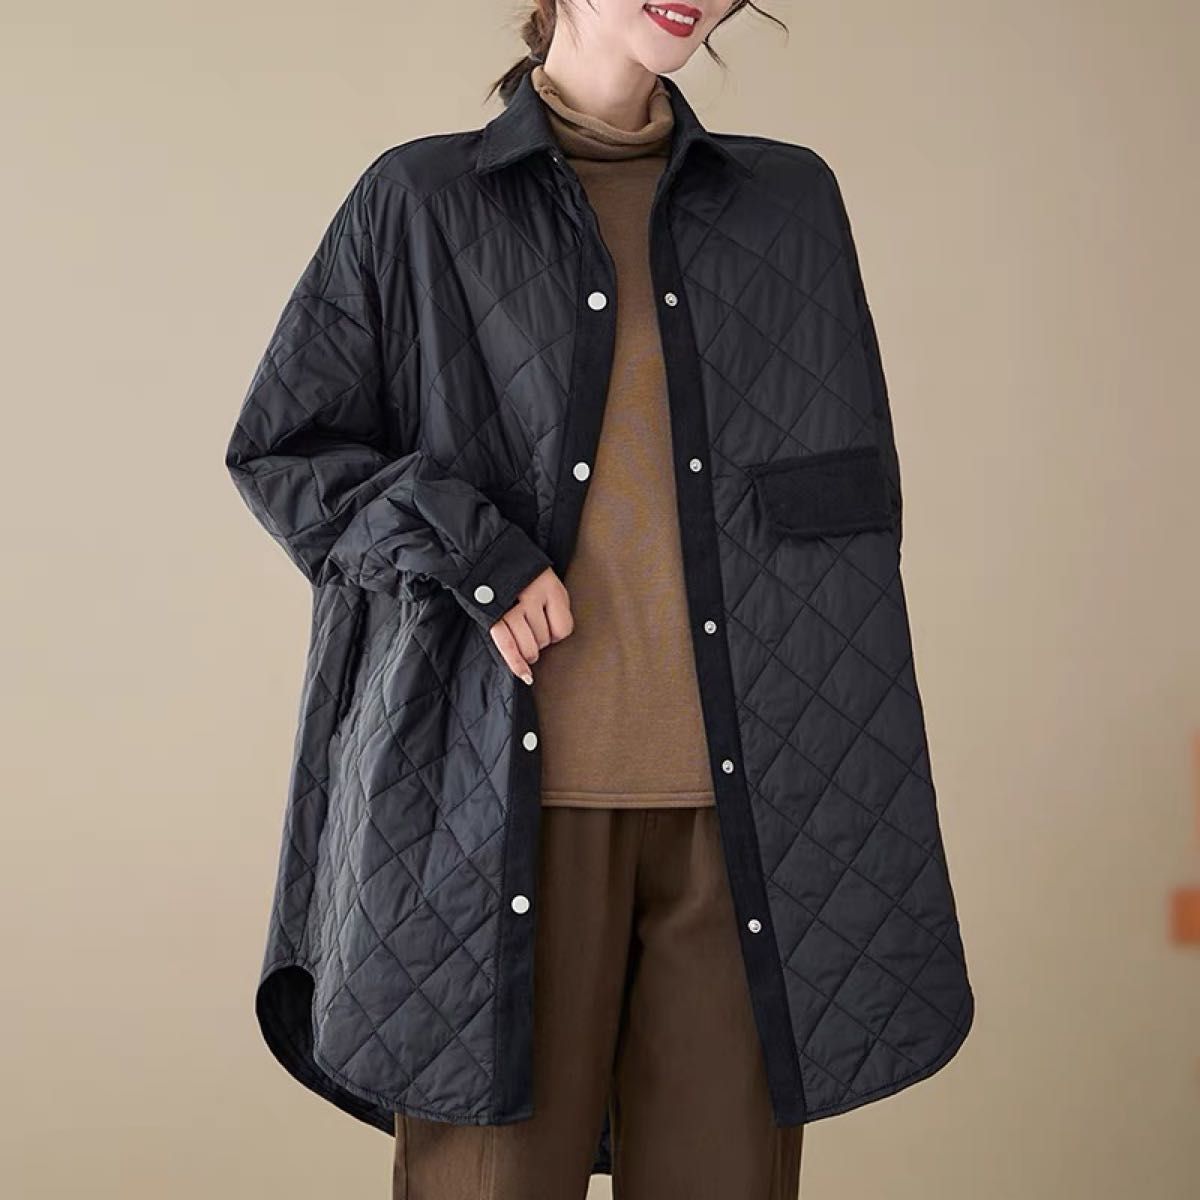 キルティングコート 中綿コート ロング丈 中綿冬ゆったり 暖かい 大きいサイズ